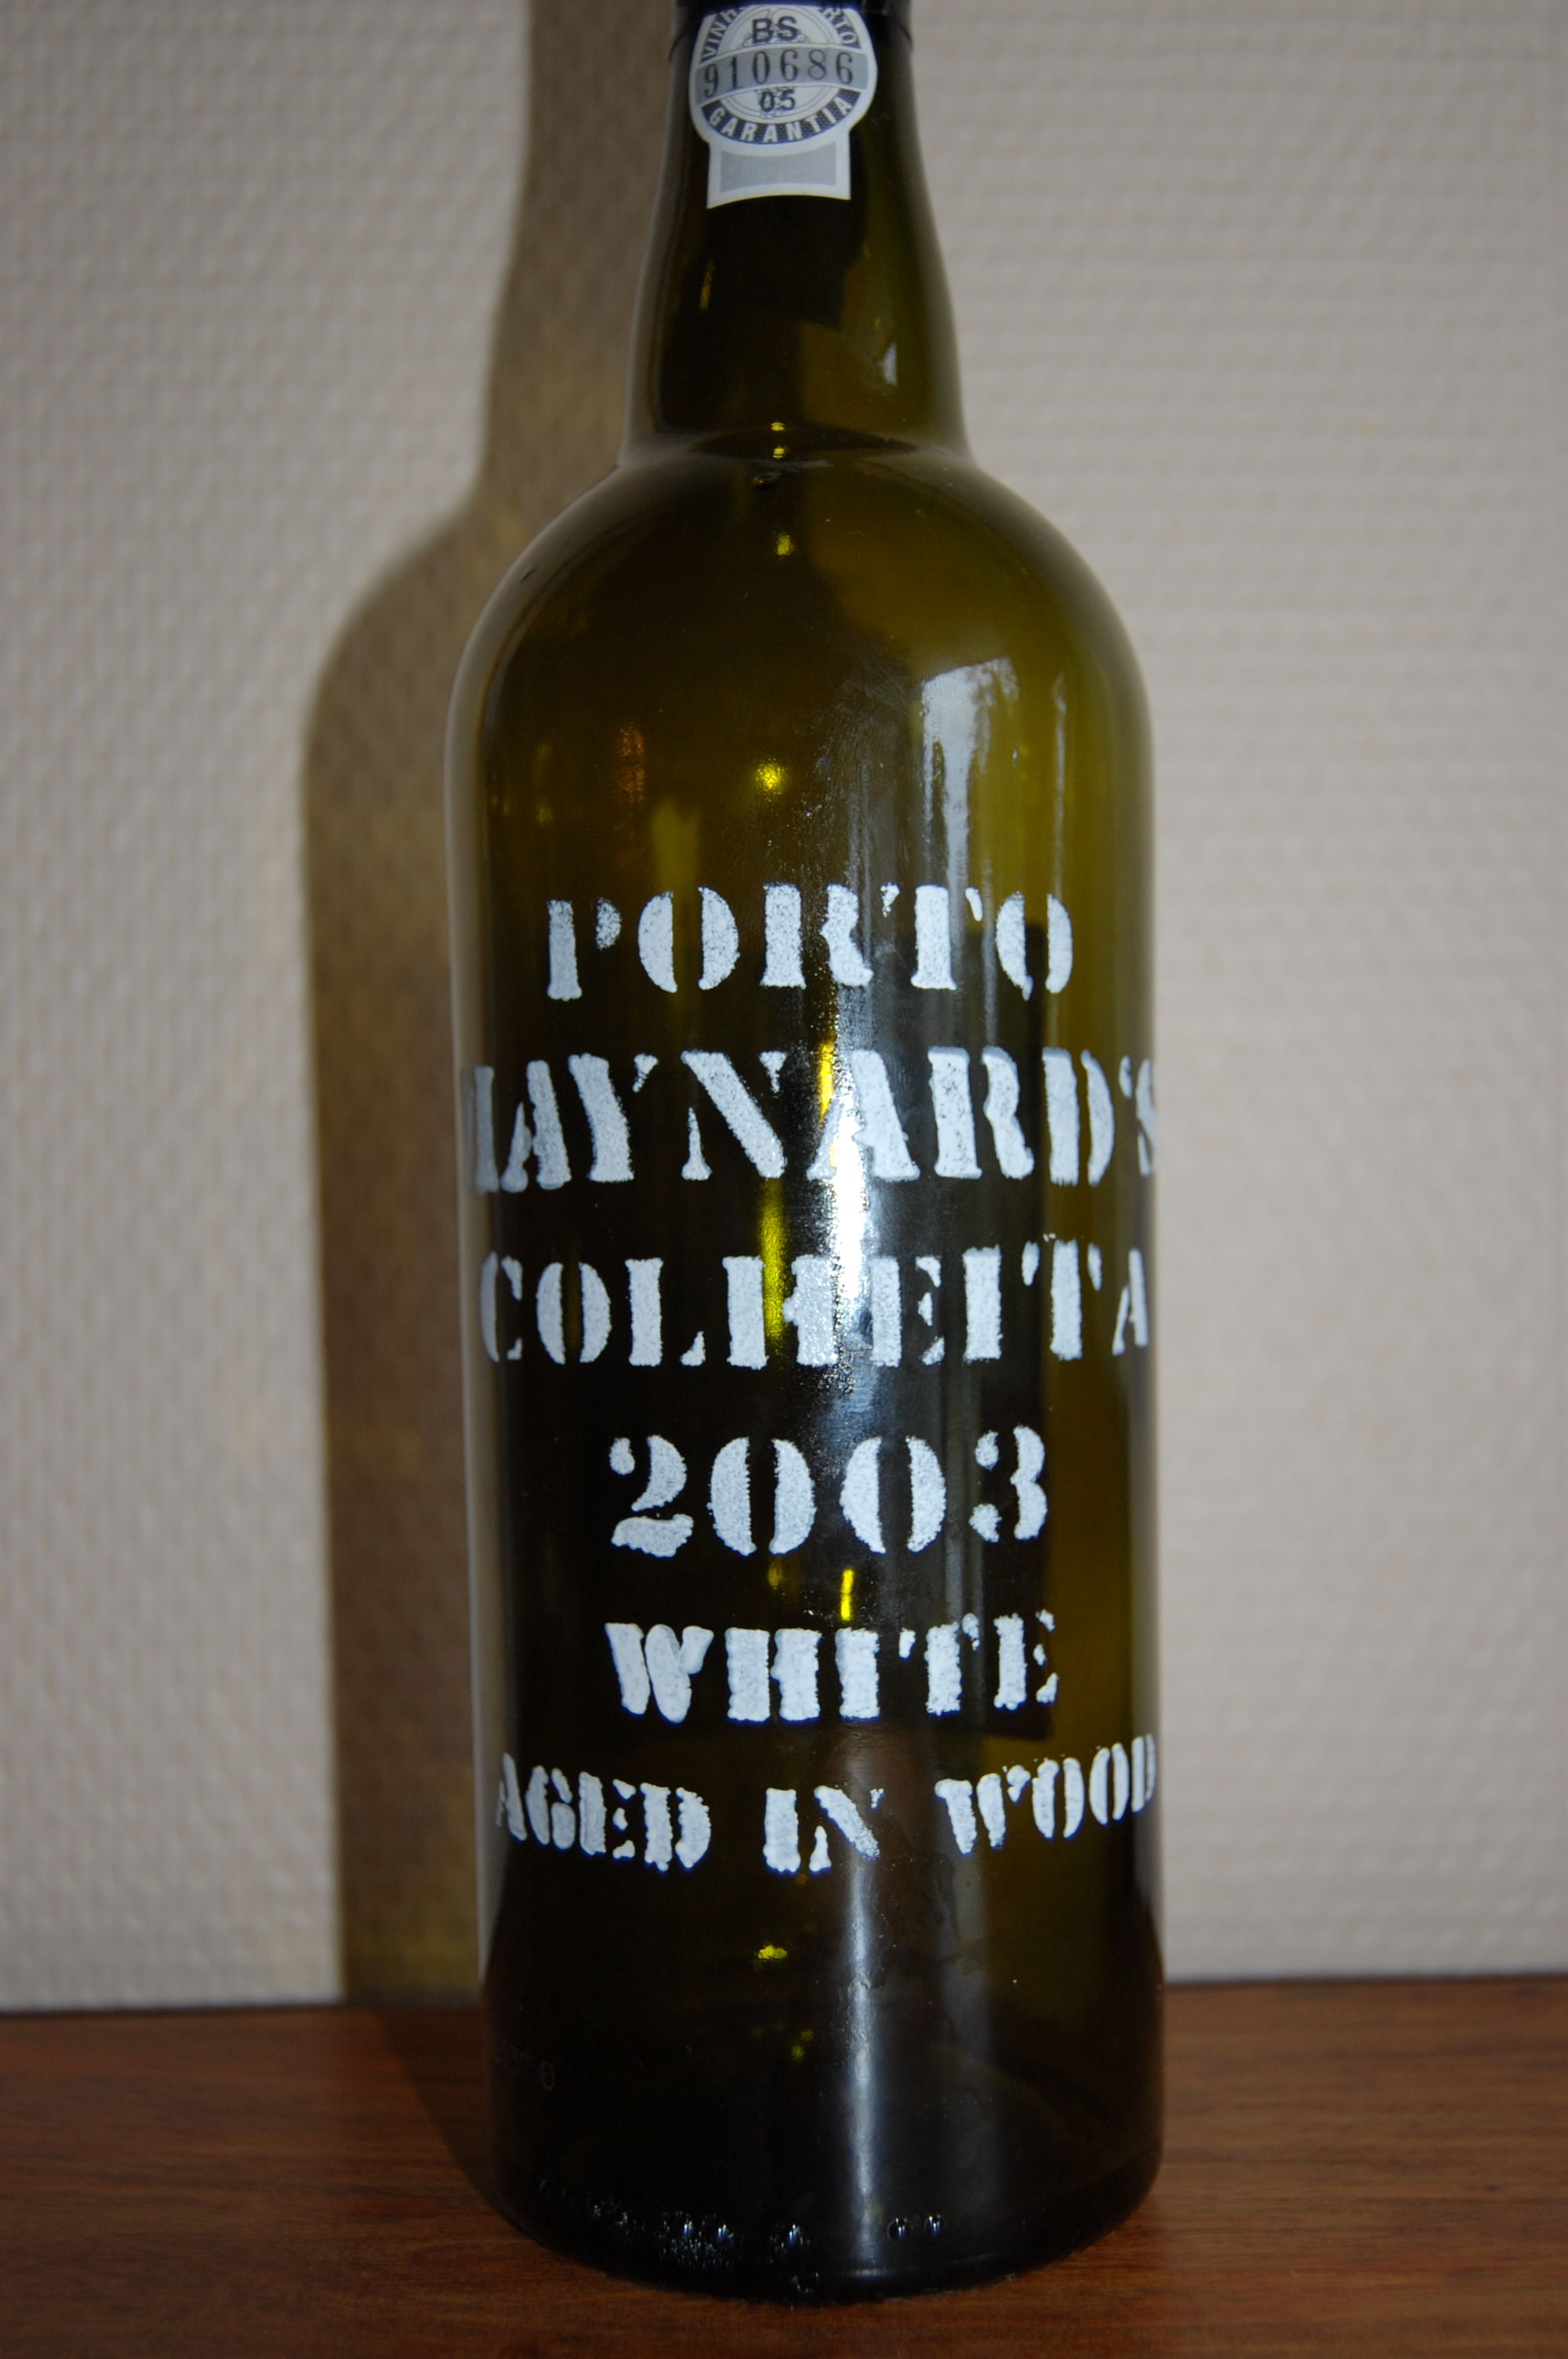 Maynards white 03